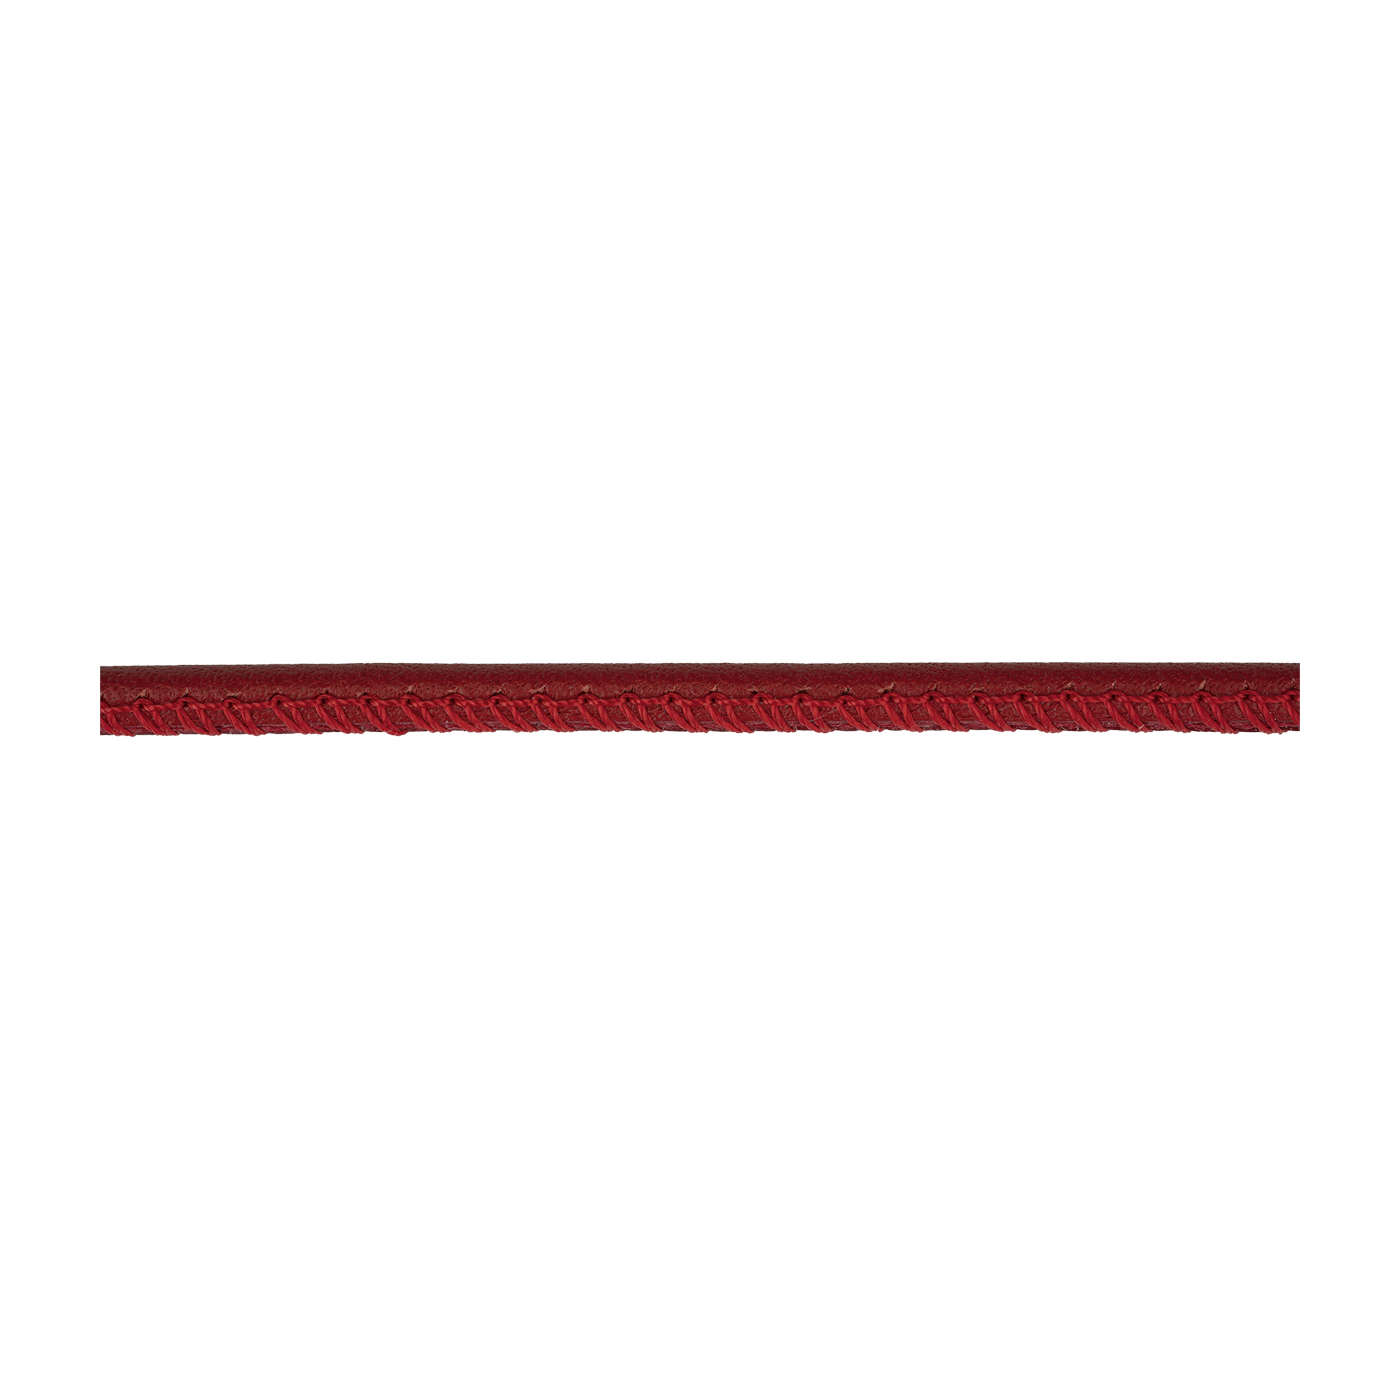 Lederband, rot, ø 2,5 mm, aus Kalbsleder - 1 m